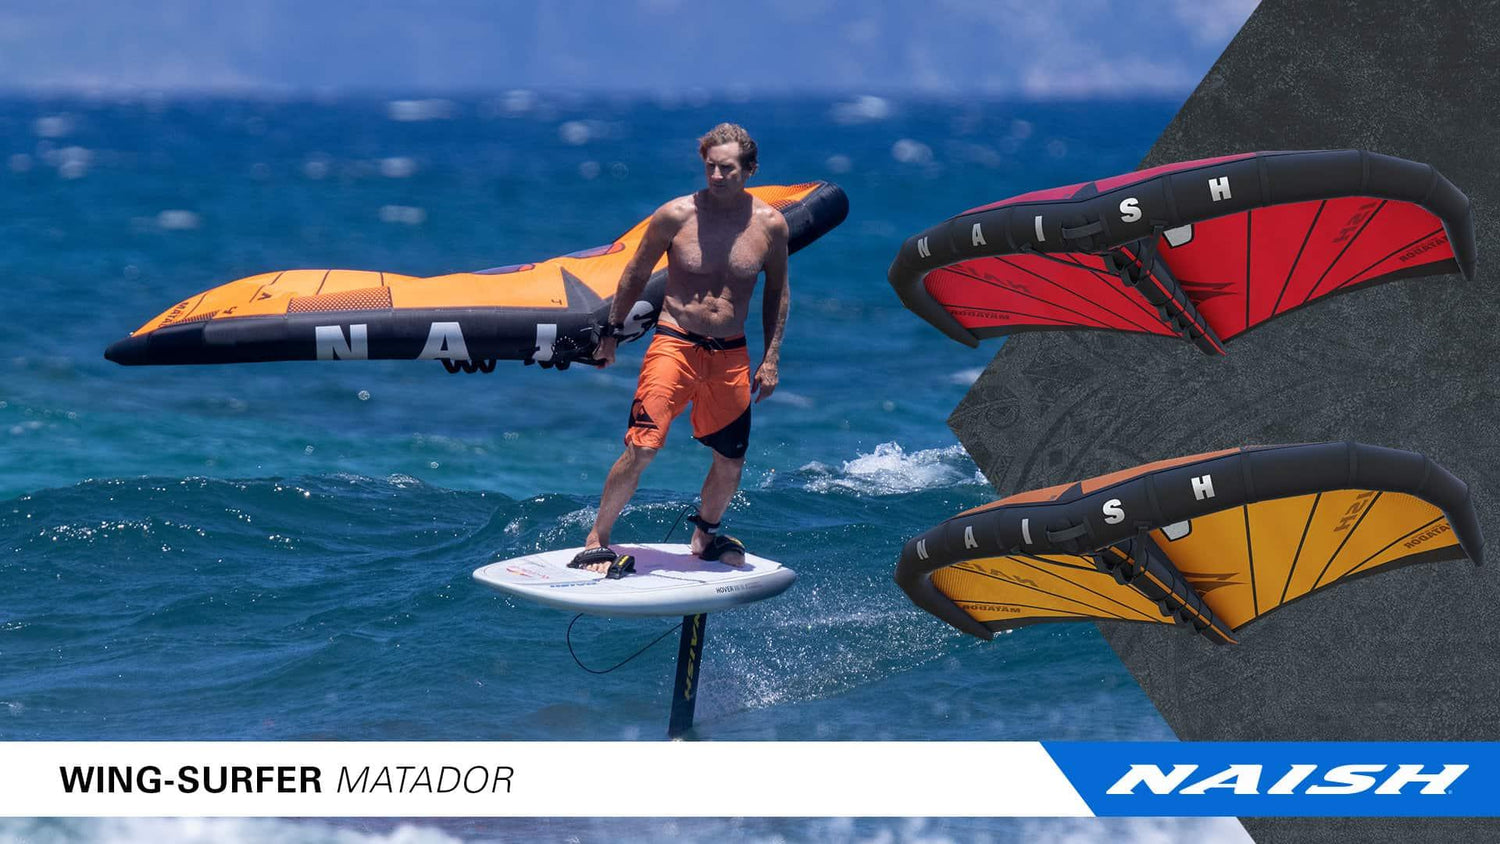 Introducing the New Wing-Surfer Matador - Naish.com